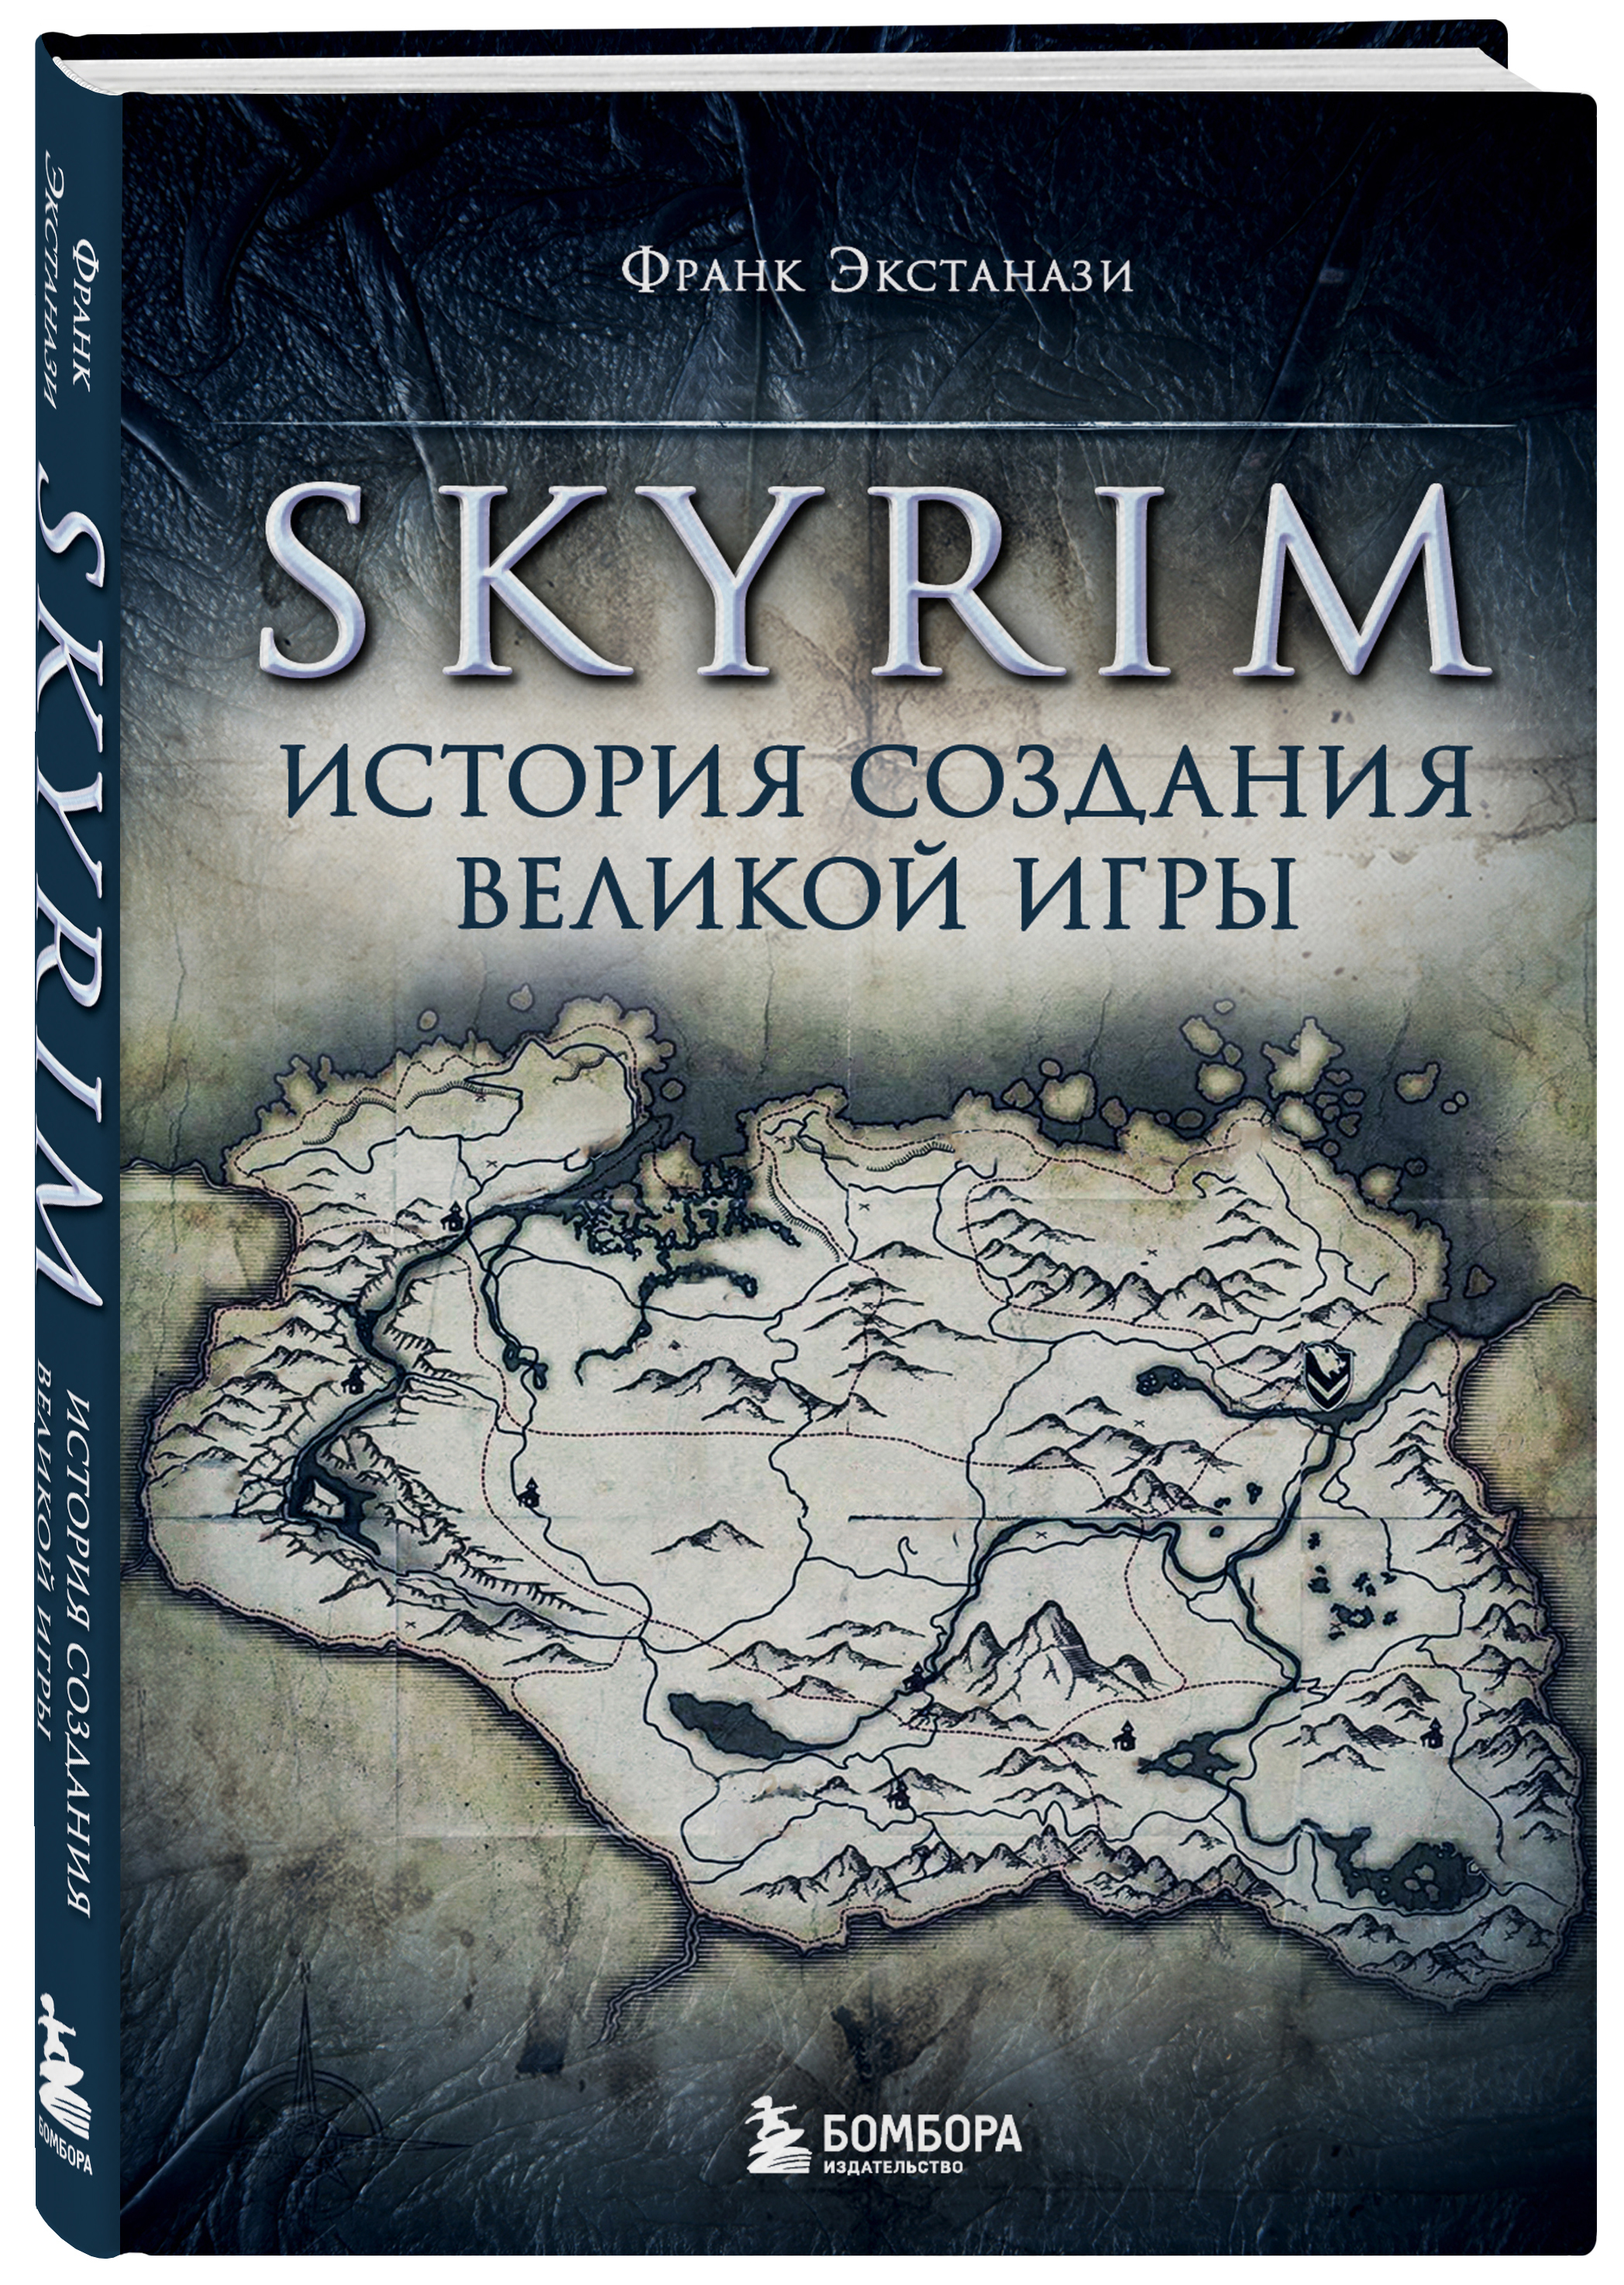 Skyrim: История создания великой игры